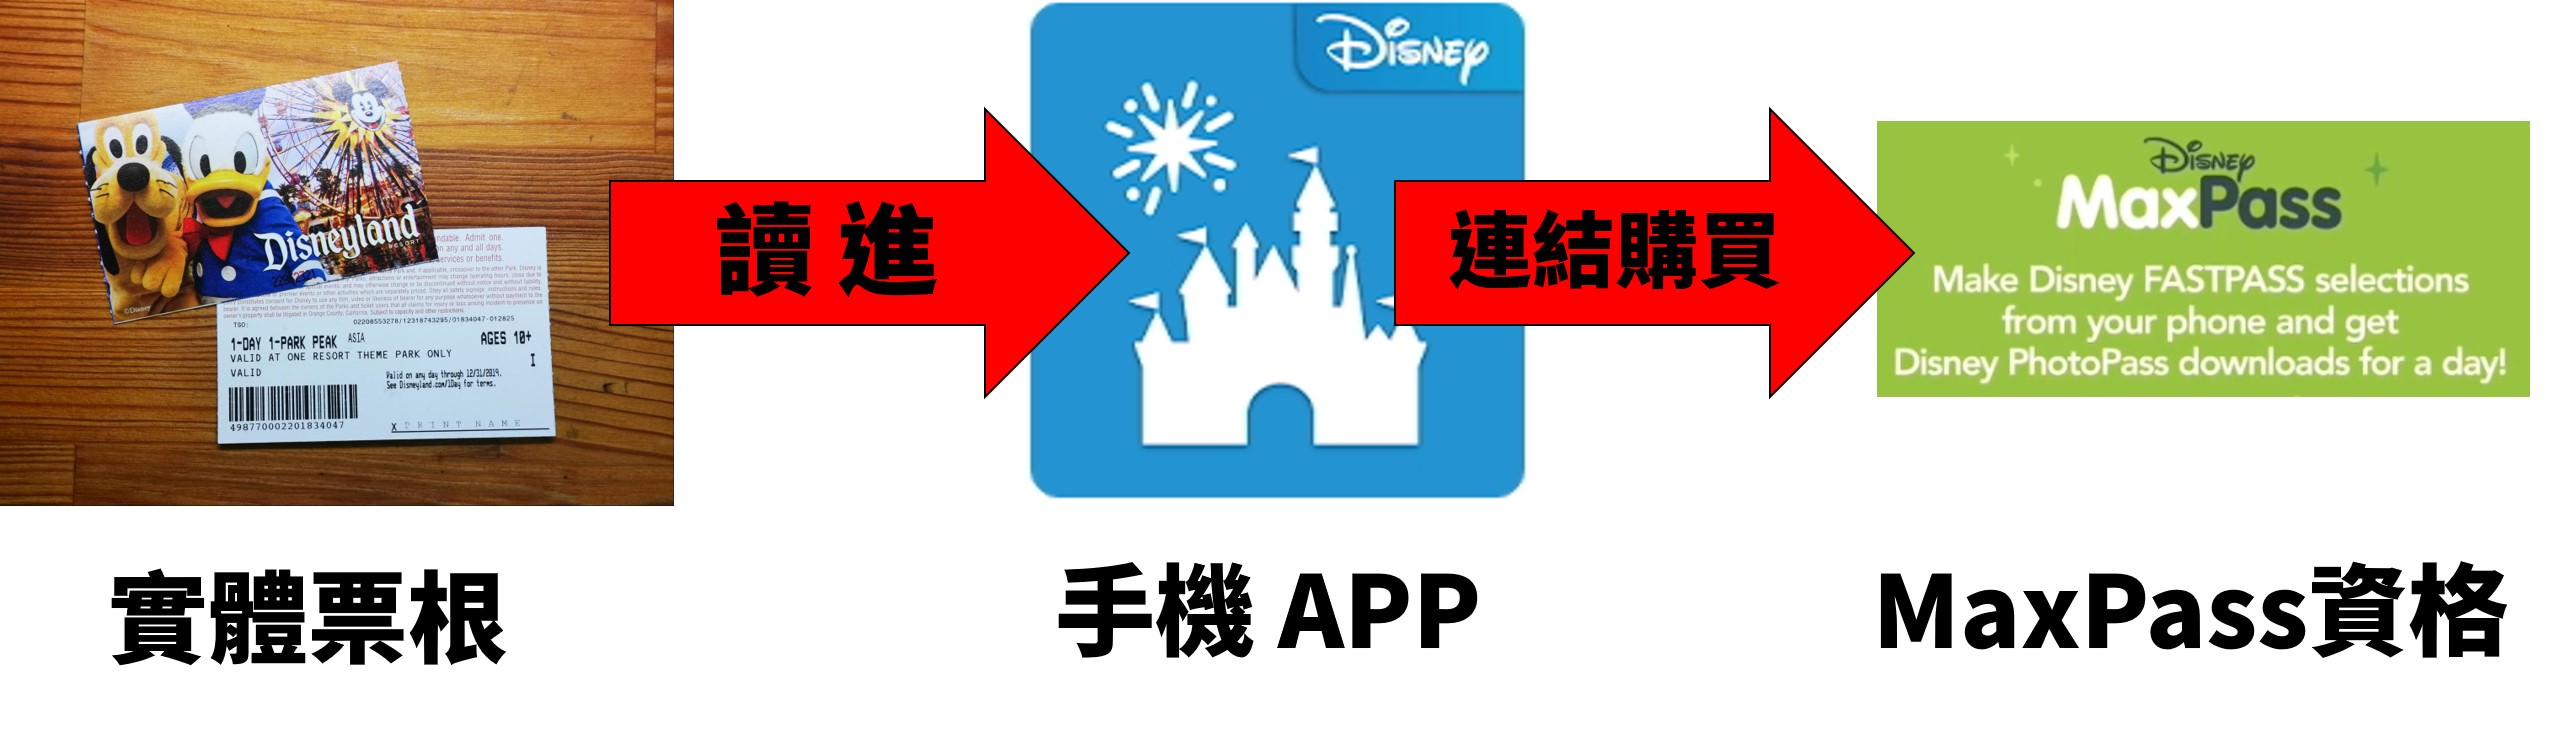 [美國/洛杉磯] Disneyland MaxPass 購買教學，手機 APP 綁定門票 - 快速通關玩遍樂園